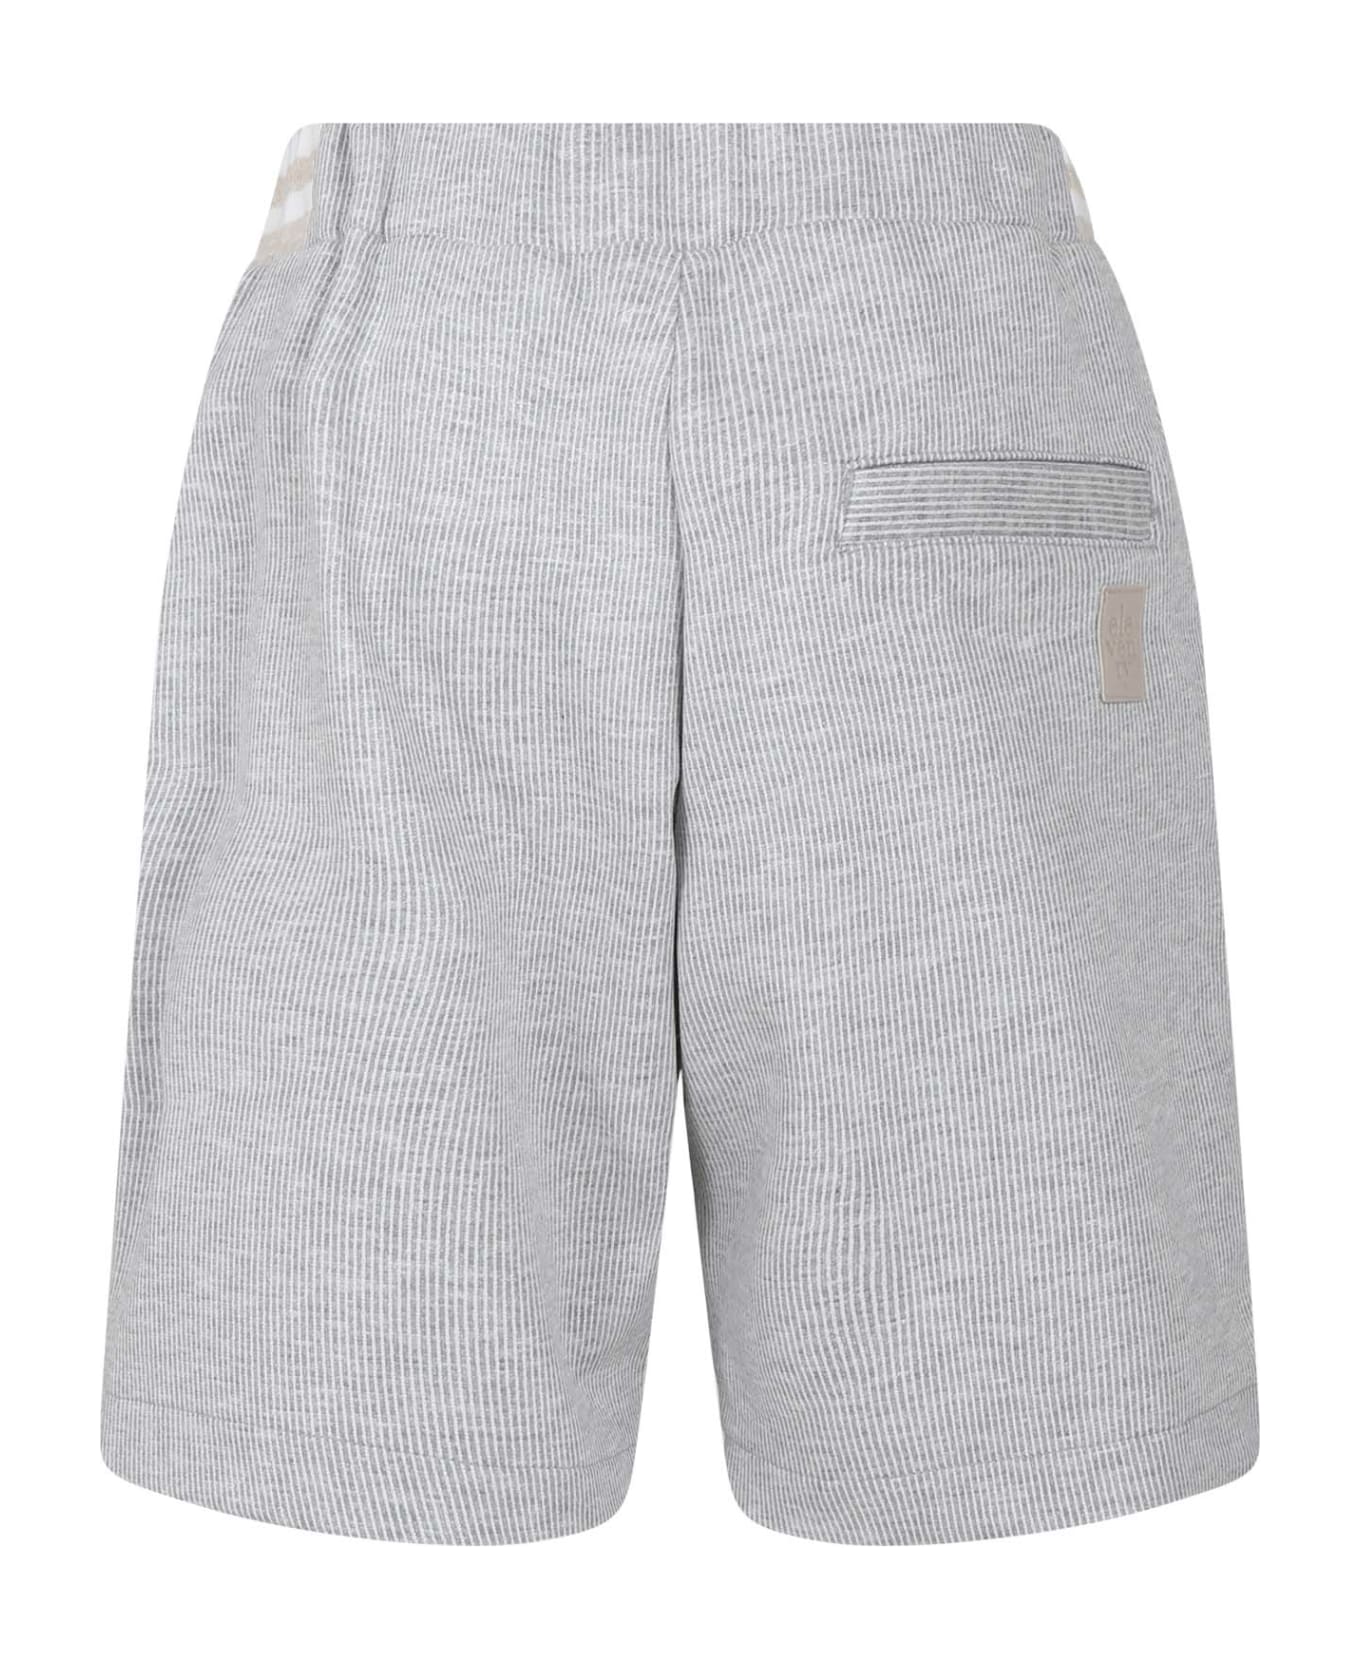 Eleventy Grey Shorts For Boy With Logo - Grey